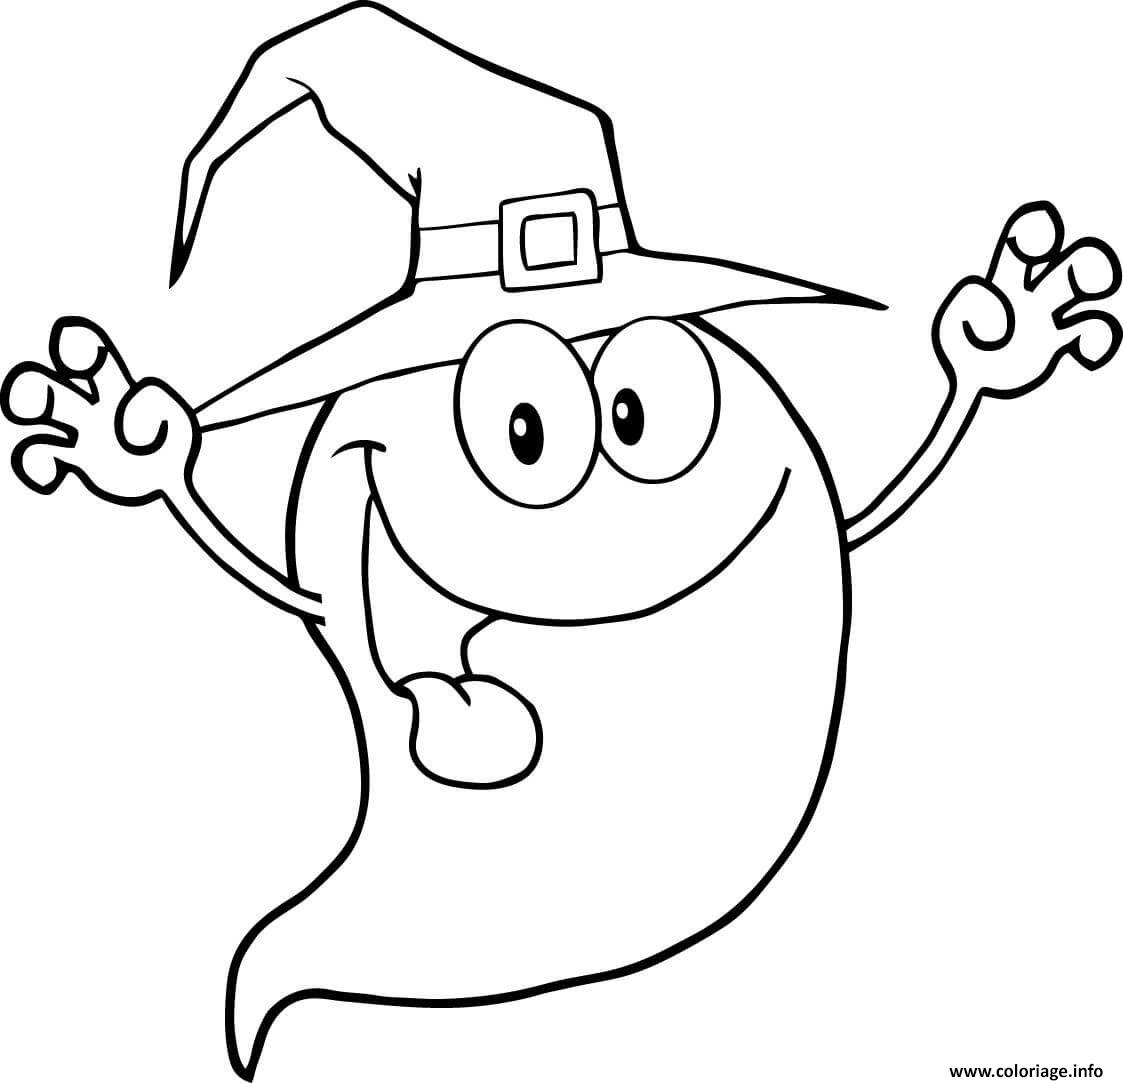 Dessin fantome cartoon halloween Coloriage Gratuit à Imprimer